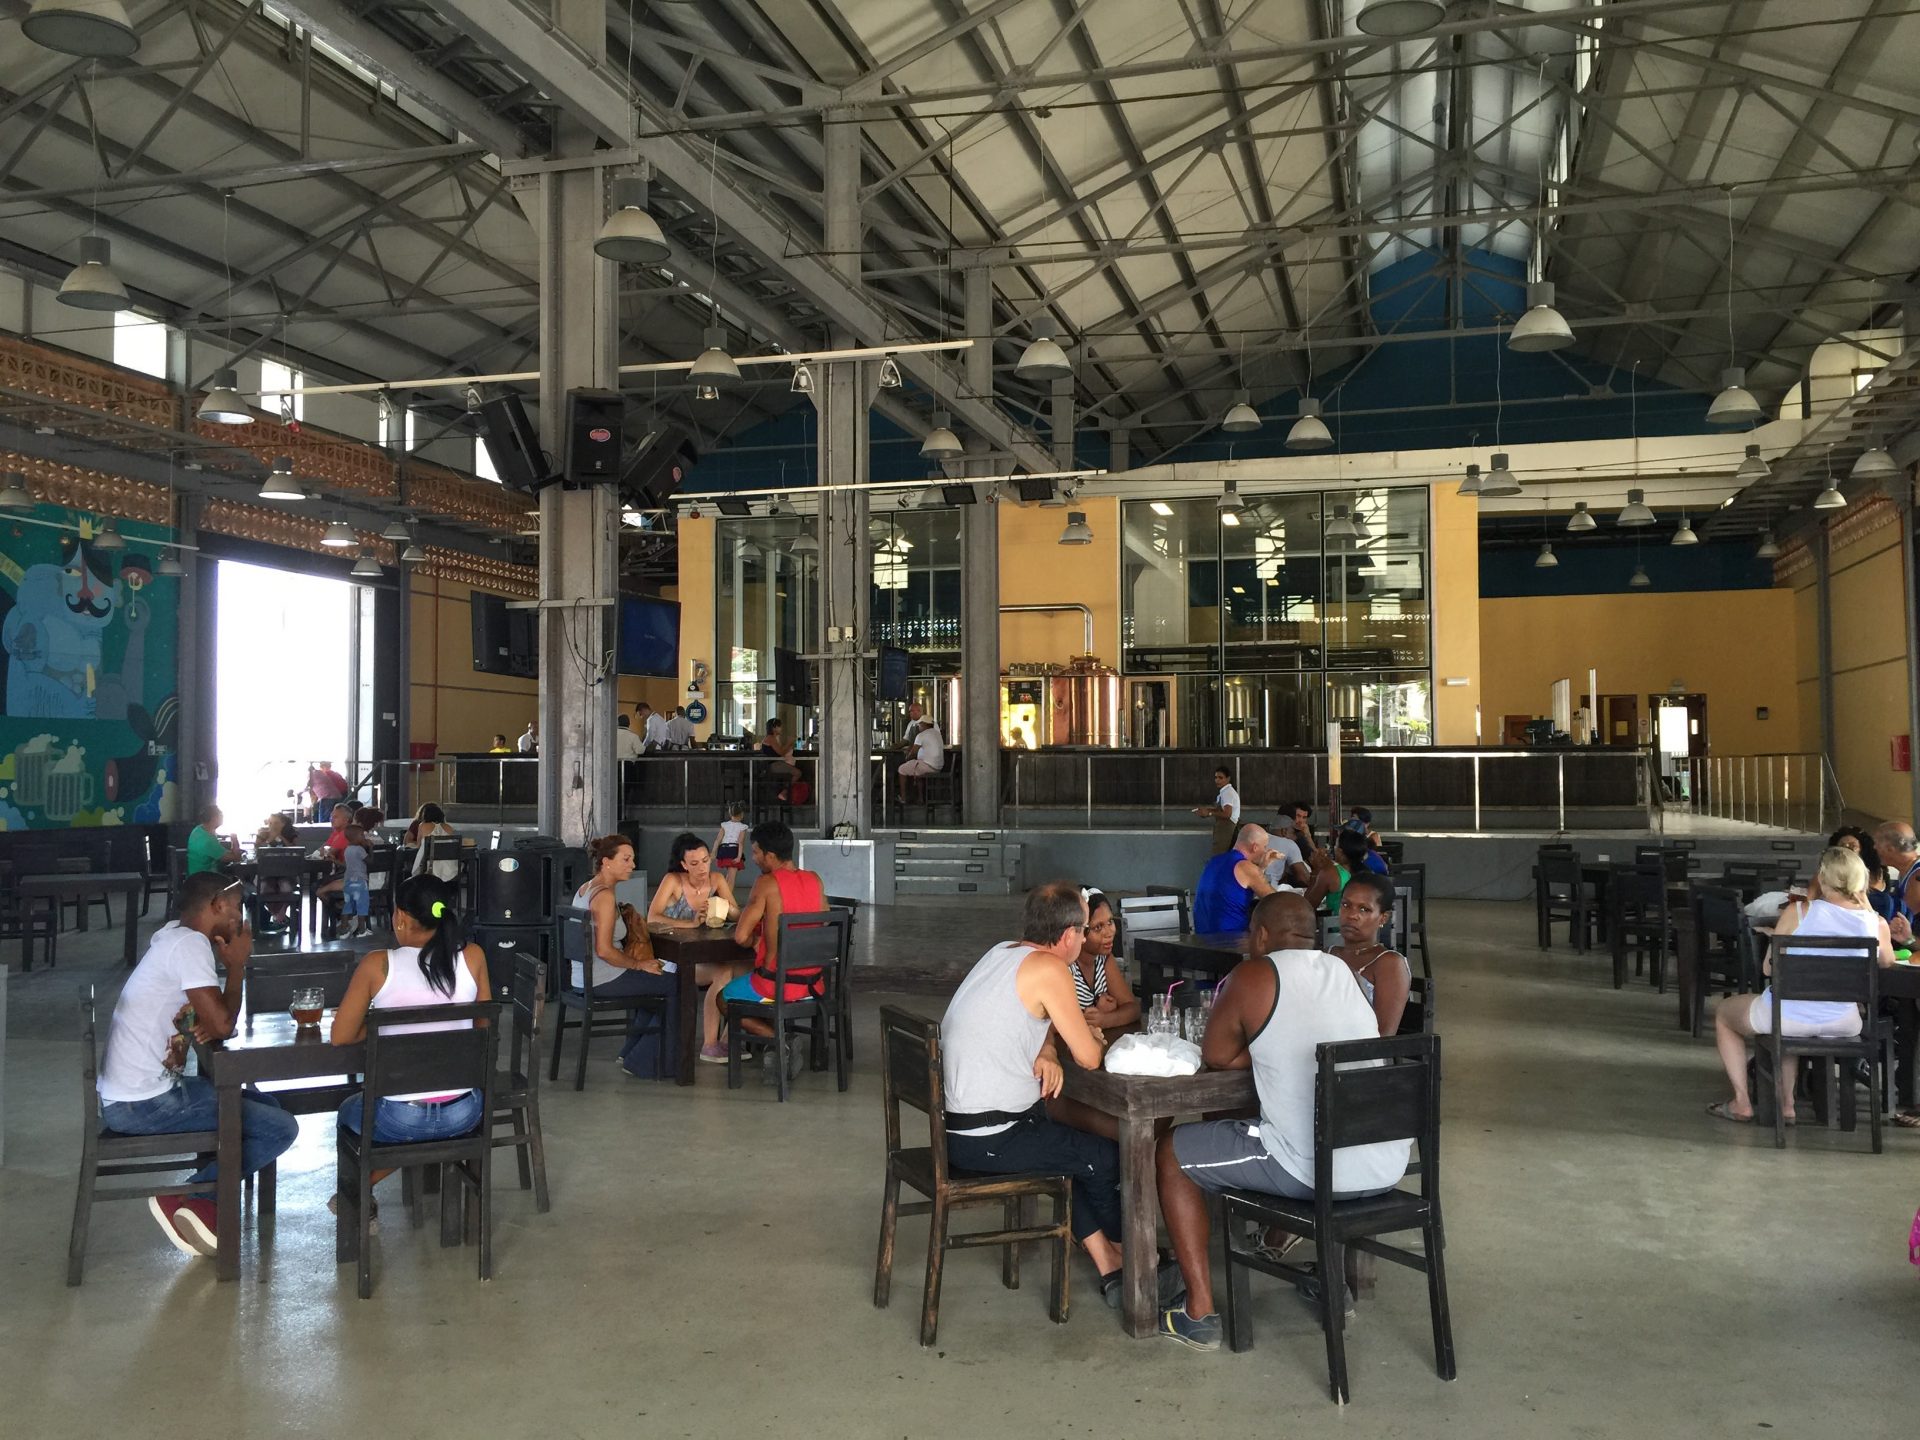 almacen de la madera y el tabaco - 2 Great Places For Craft Beer in Havana, Cuba